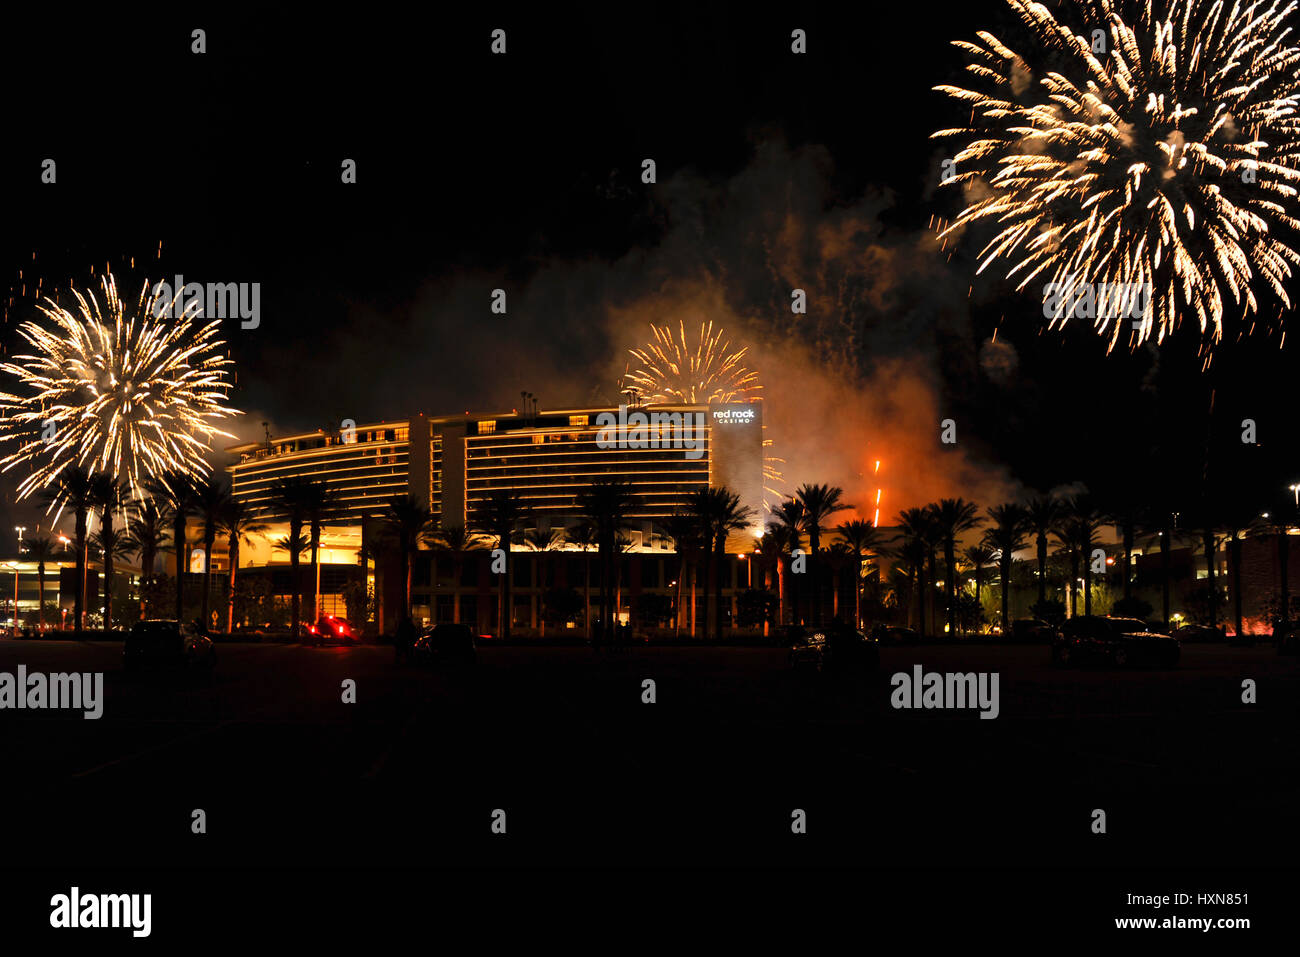 Fireworks celebration at Red Rocks Casino in Las Vegas, Nevada. Stock Photo